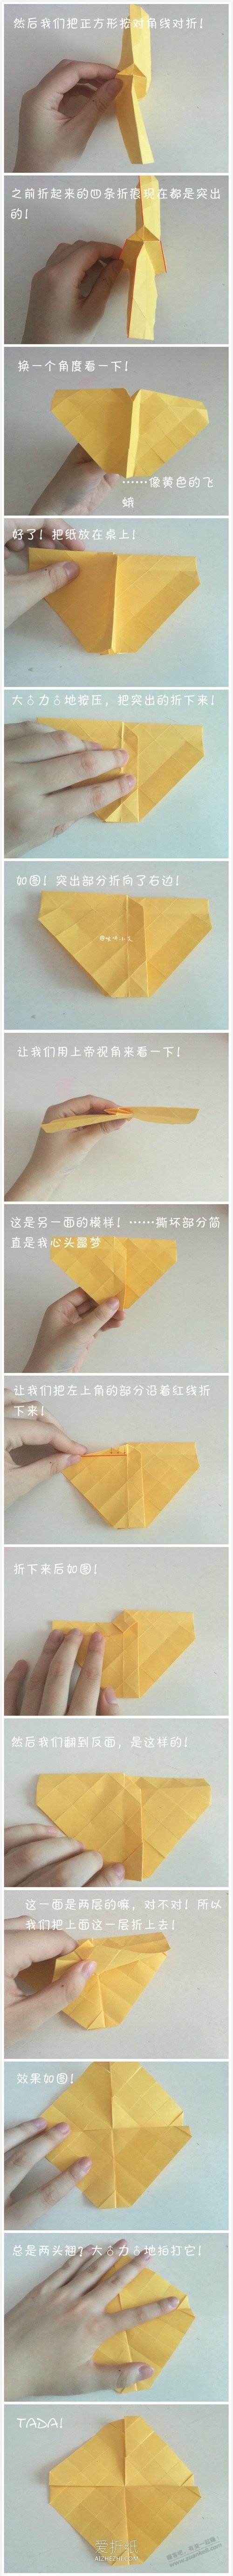 立体玫瑰的折法图解-惠小助(52huixz.com)